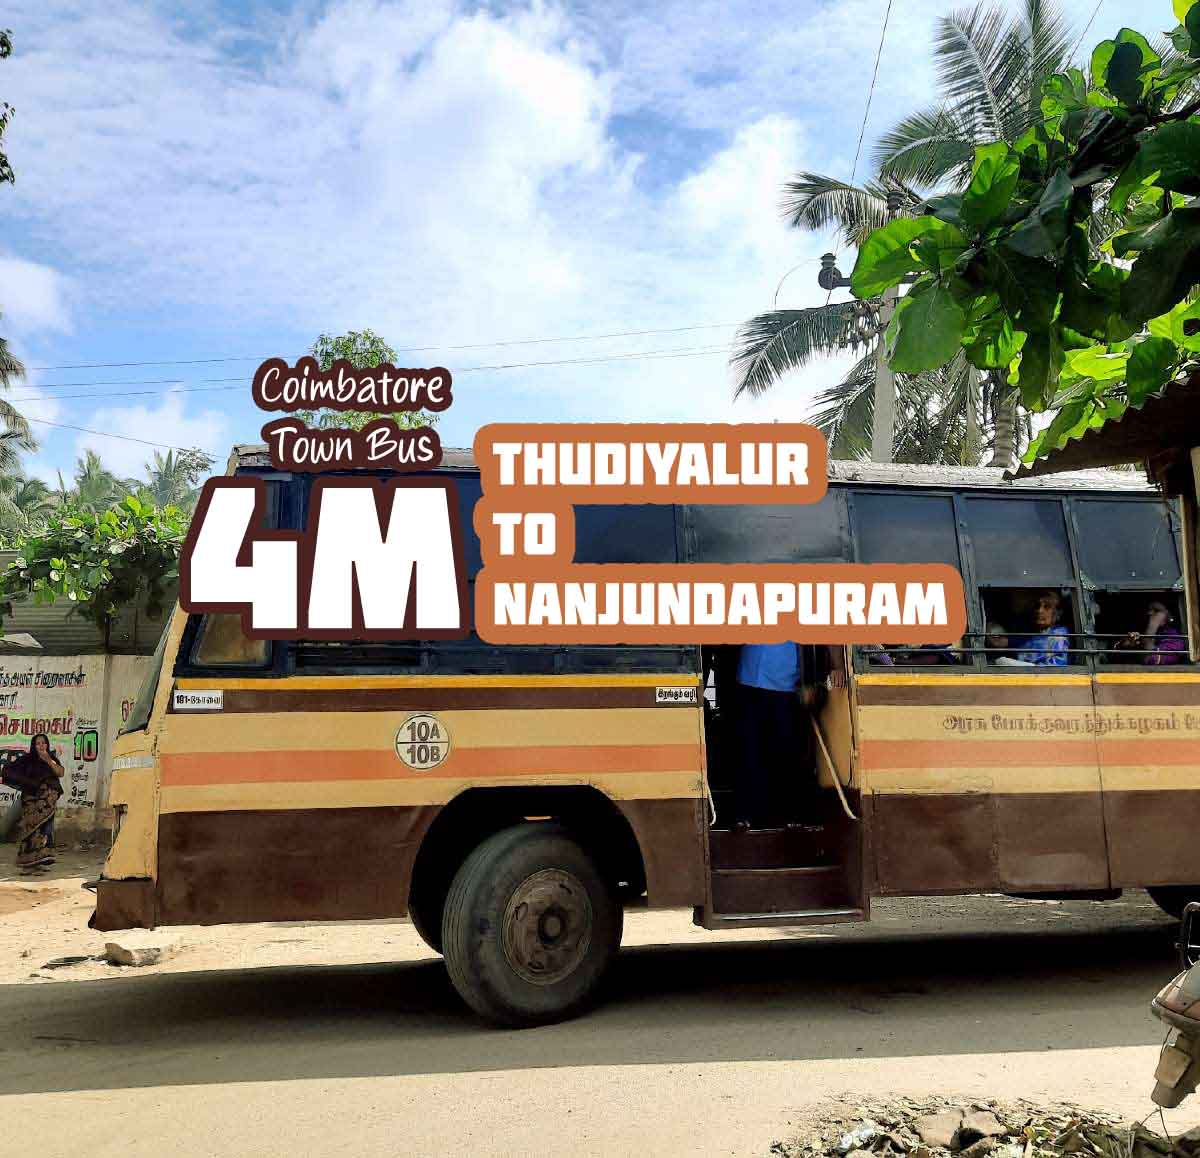 Coimbatore Town Bus Route 4M Thudiyalur to Nanjundapuram Bus Timings